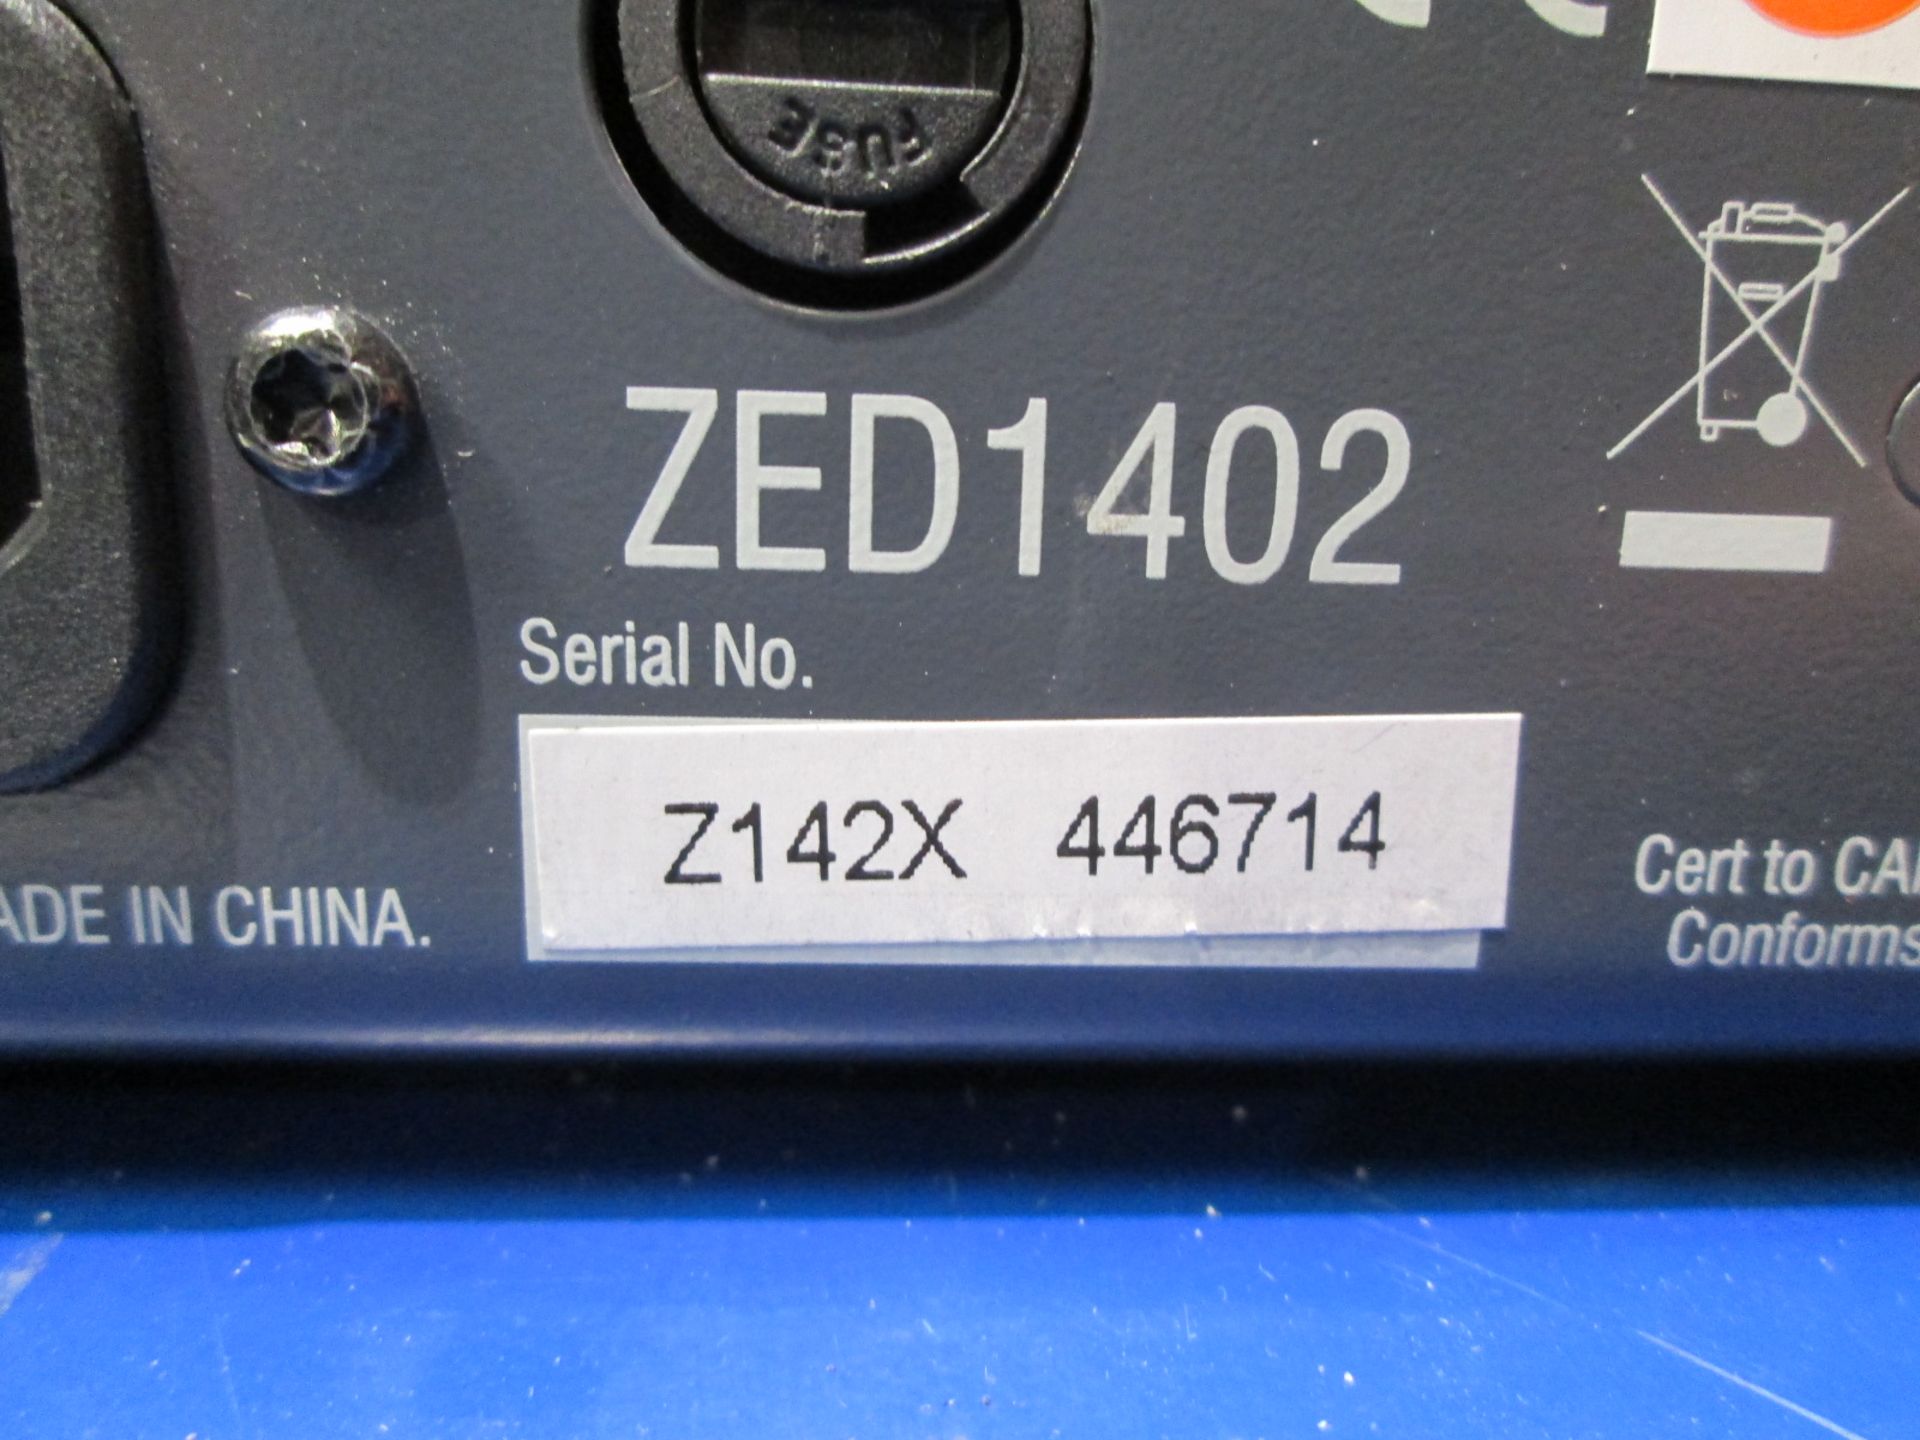 Allen & Heath Zed 14 Mixing Desk (6 x mono / 4 x stereo) S/N Z142X 446714. In flight case with - Image 5 of 6